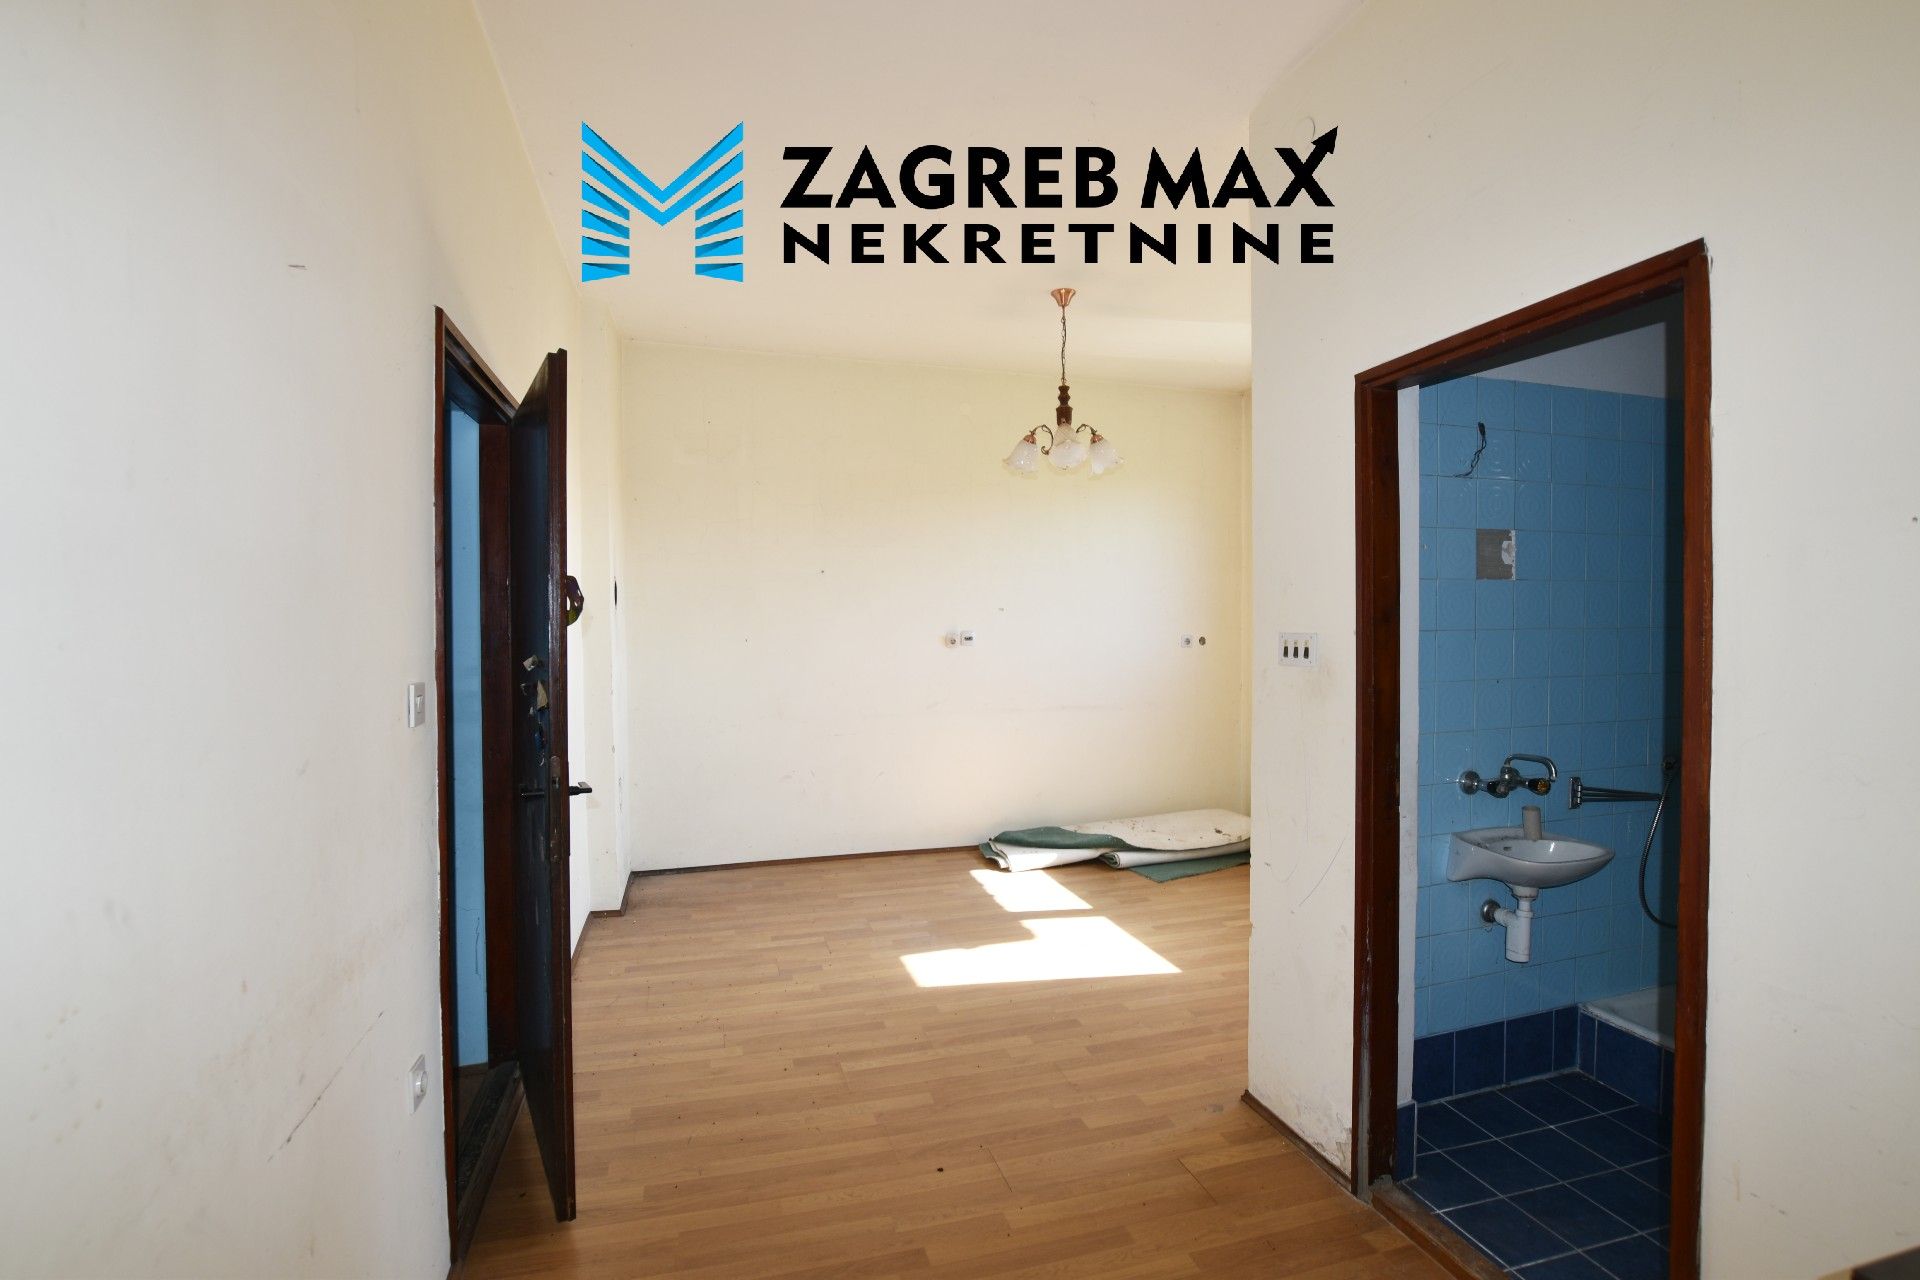 Zagreb - STUBIČKE TOPLICE - dvokatnica 130 m2 + odvojeno garaža i spremište